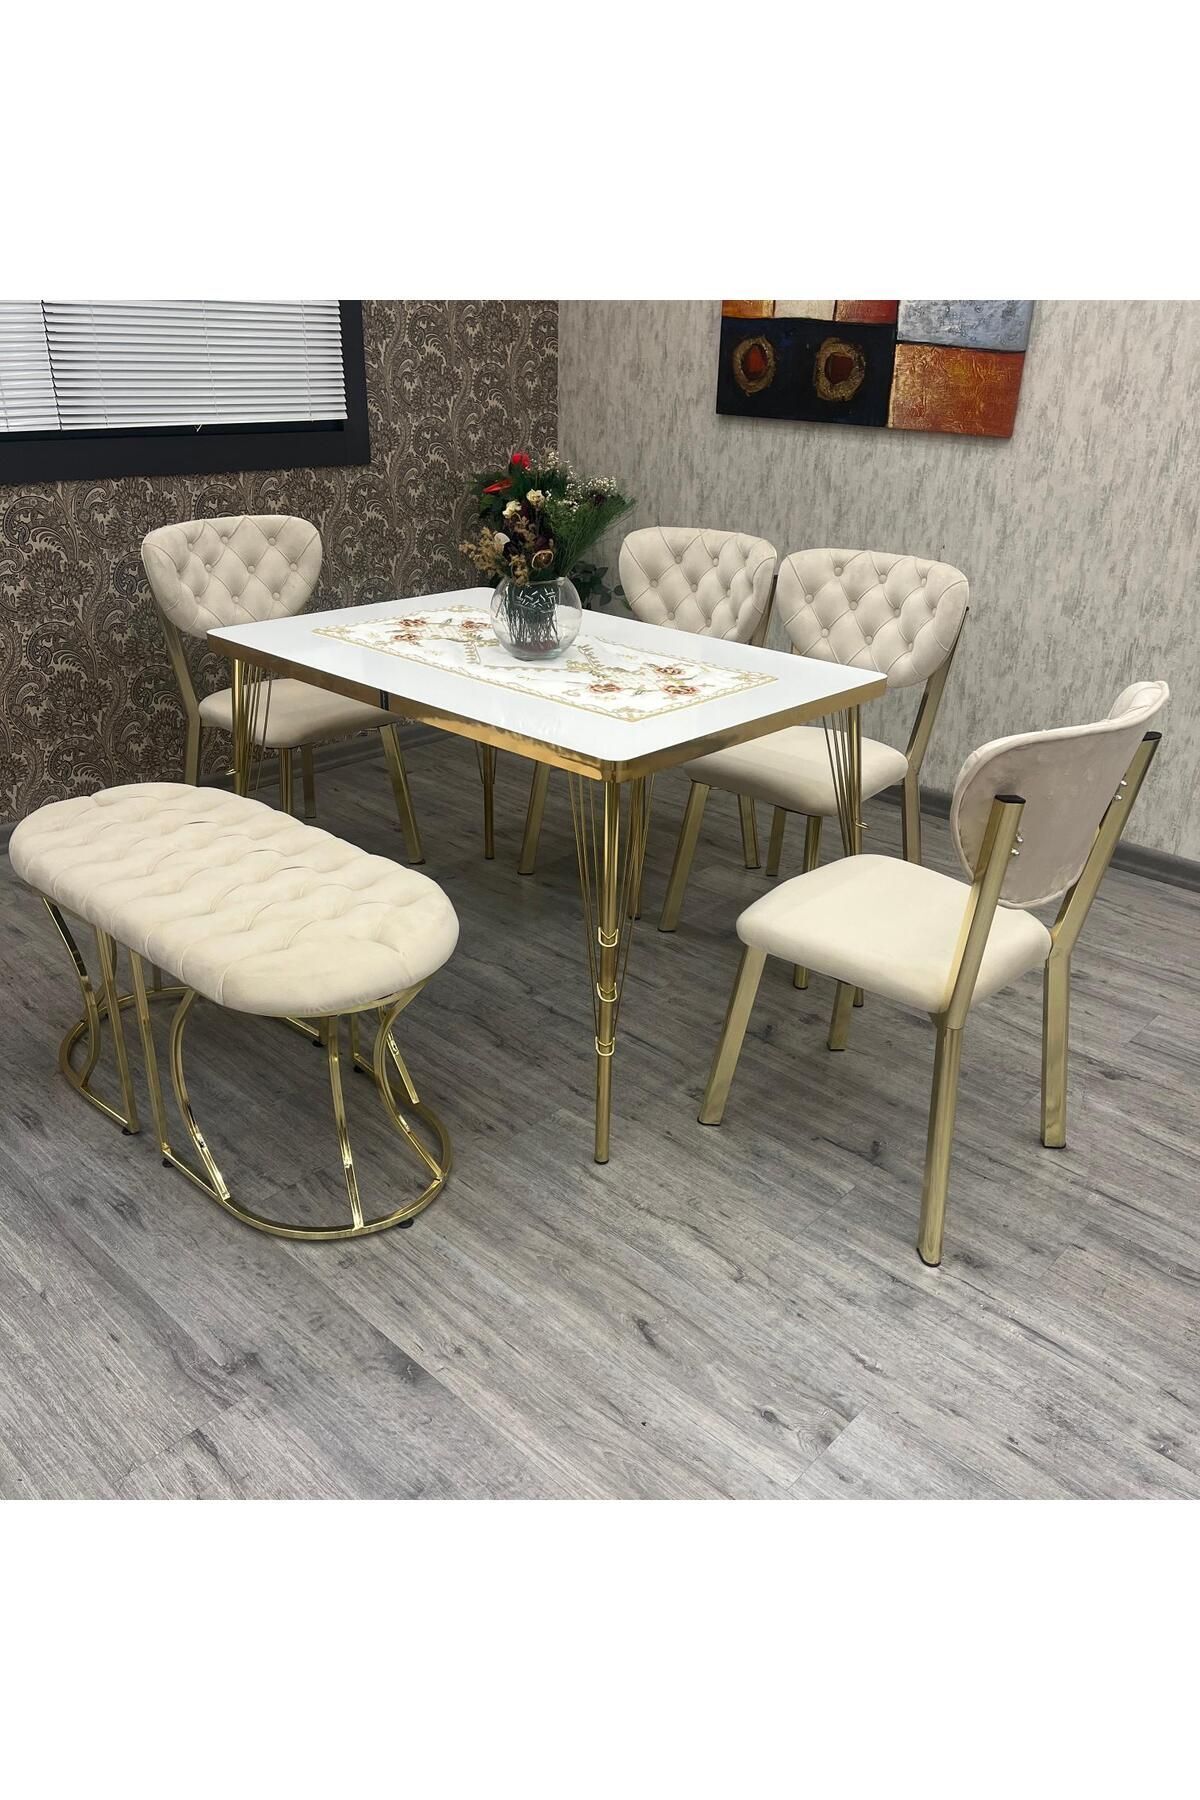 BY ORHAN GÜZEL Mutfak Masa Sandalye Takımı Akuamarin 80-120 Ck Gold Benchli 6 Kişilik Mutfak Masası Takımı